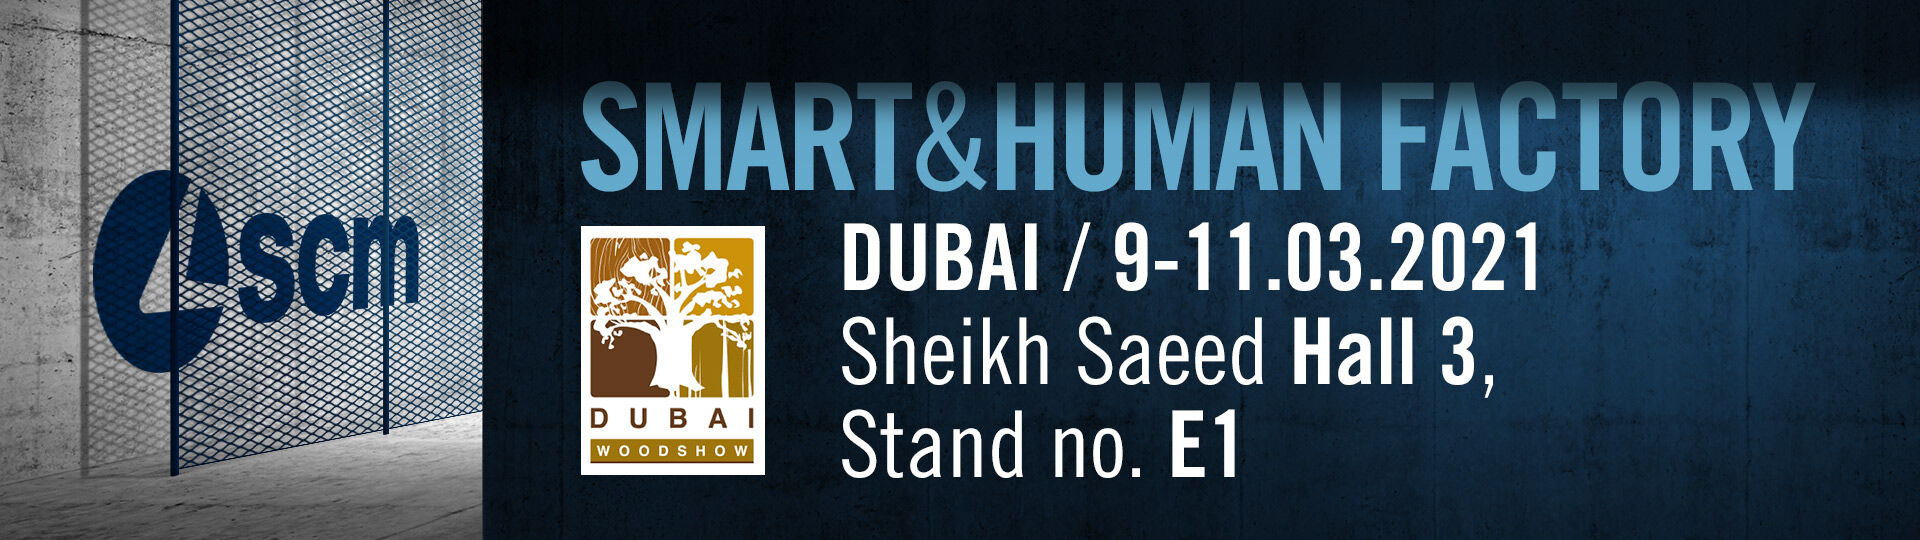 Las últimas novedades SCM en Dubai Woodshow (Sheikh Saed Hall 3, stand E1)